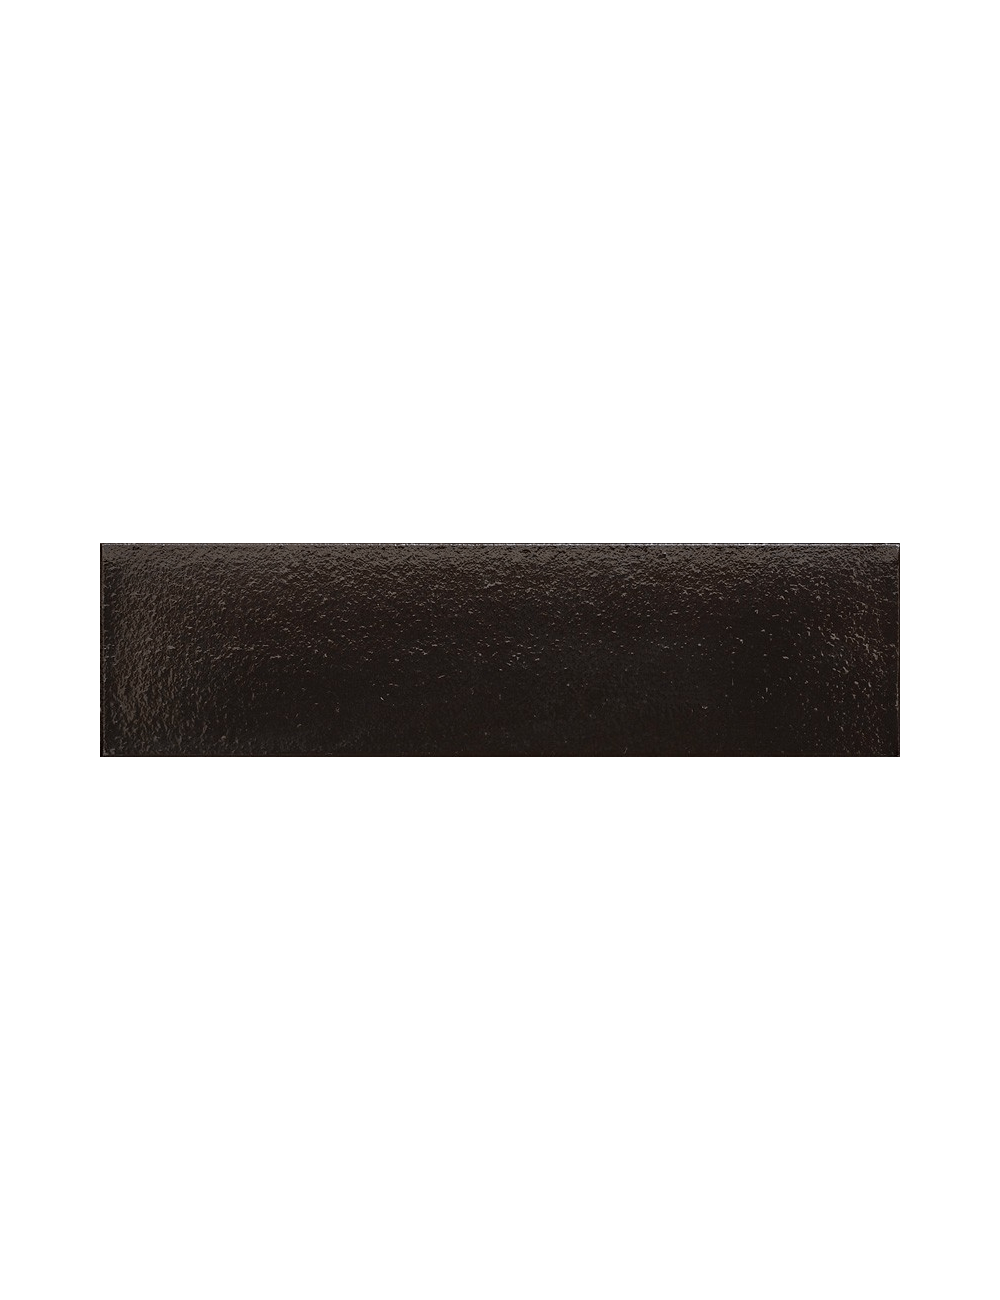 Placaj ceramic Klinker - Onix (Onyx black) (17) 250x65x10